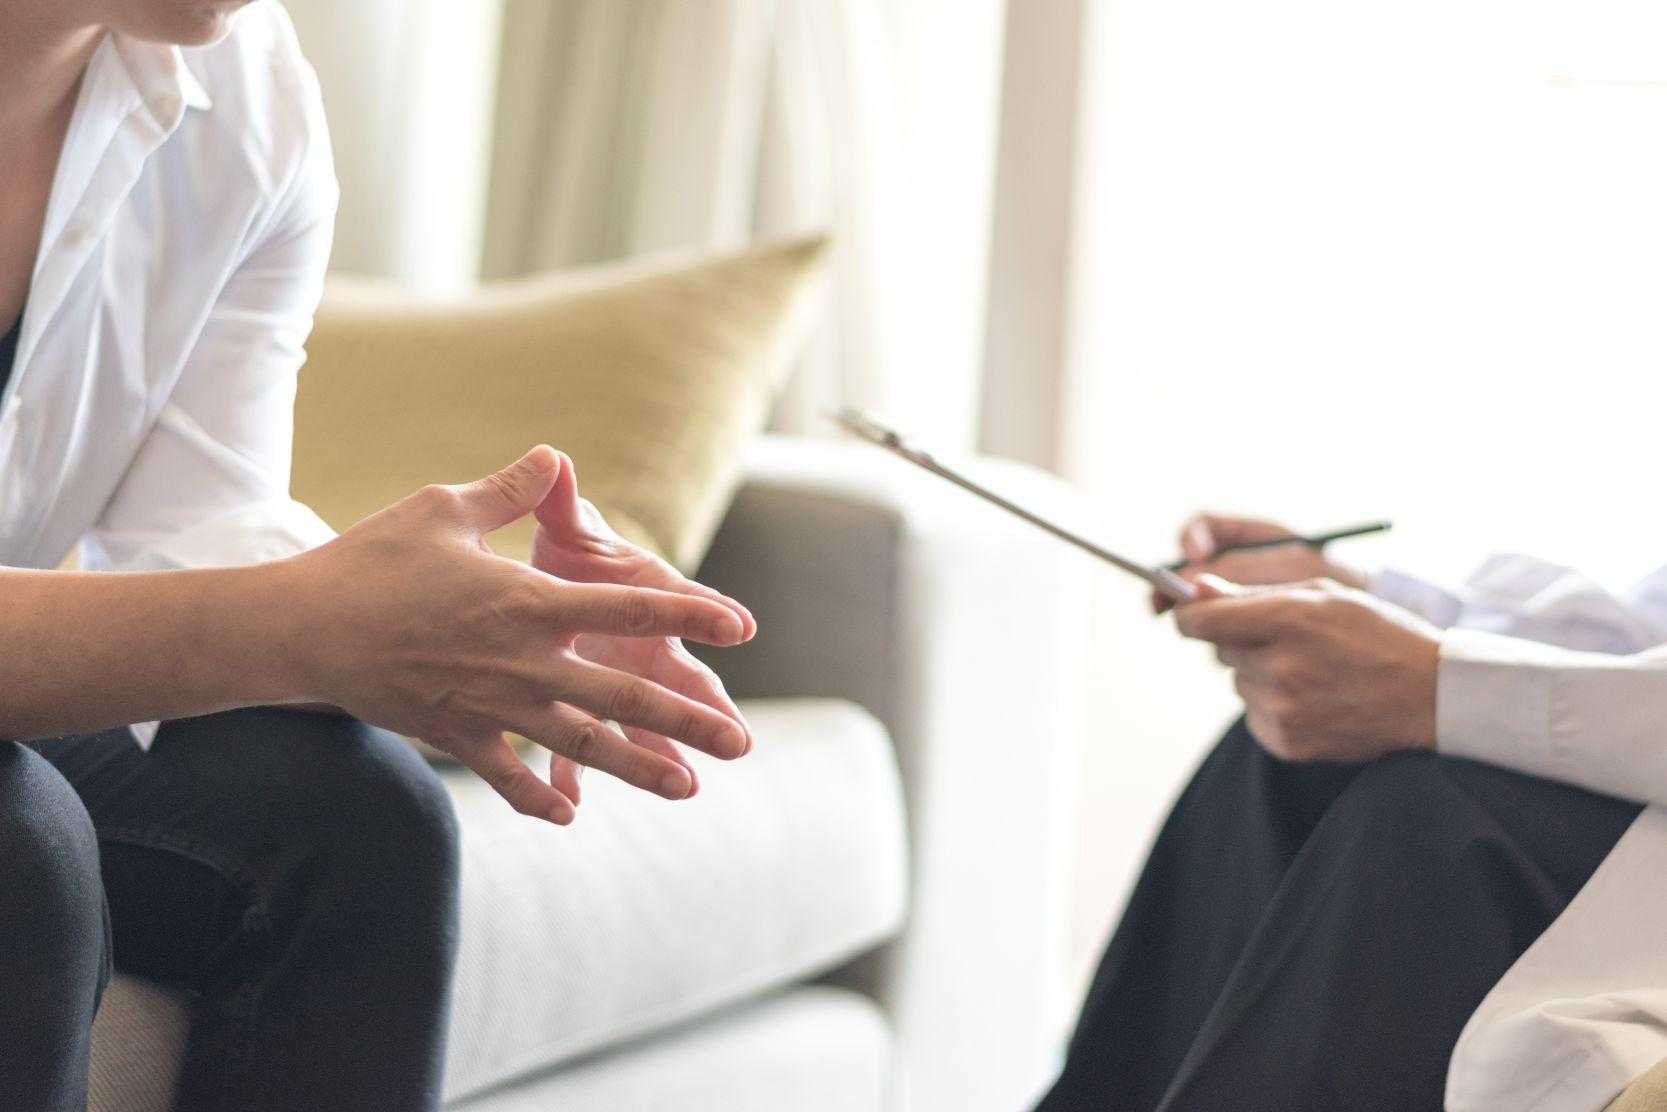 Токсичная терапия: 10 типов психологов и психотерапевтов, которые вам только навредят